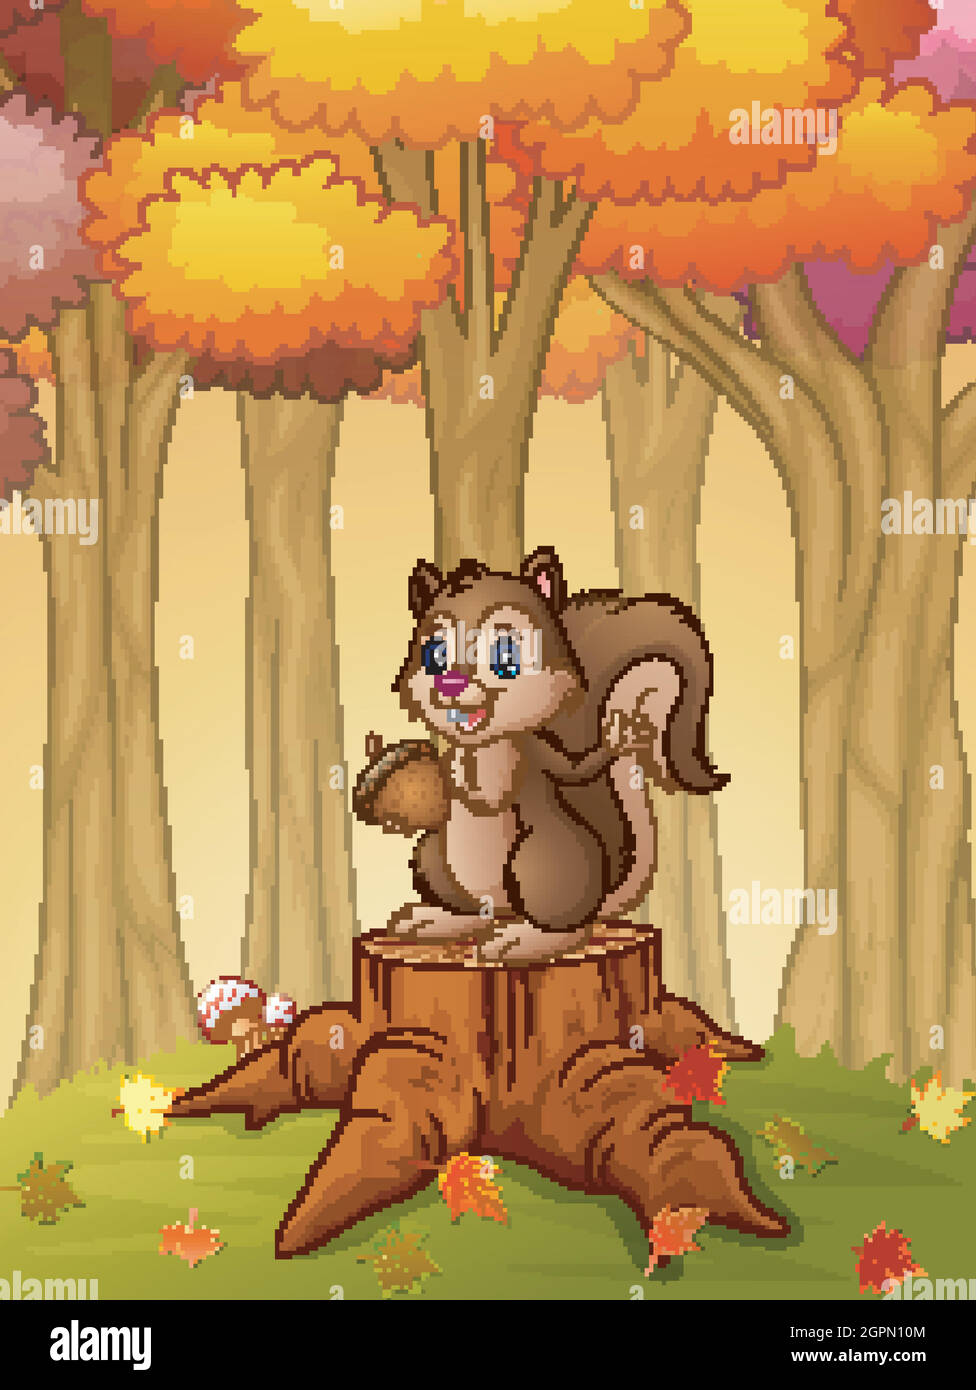 Écureuil de dessin animé tenant des glands dans la forêt Illustration de Vecteur